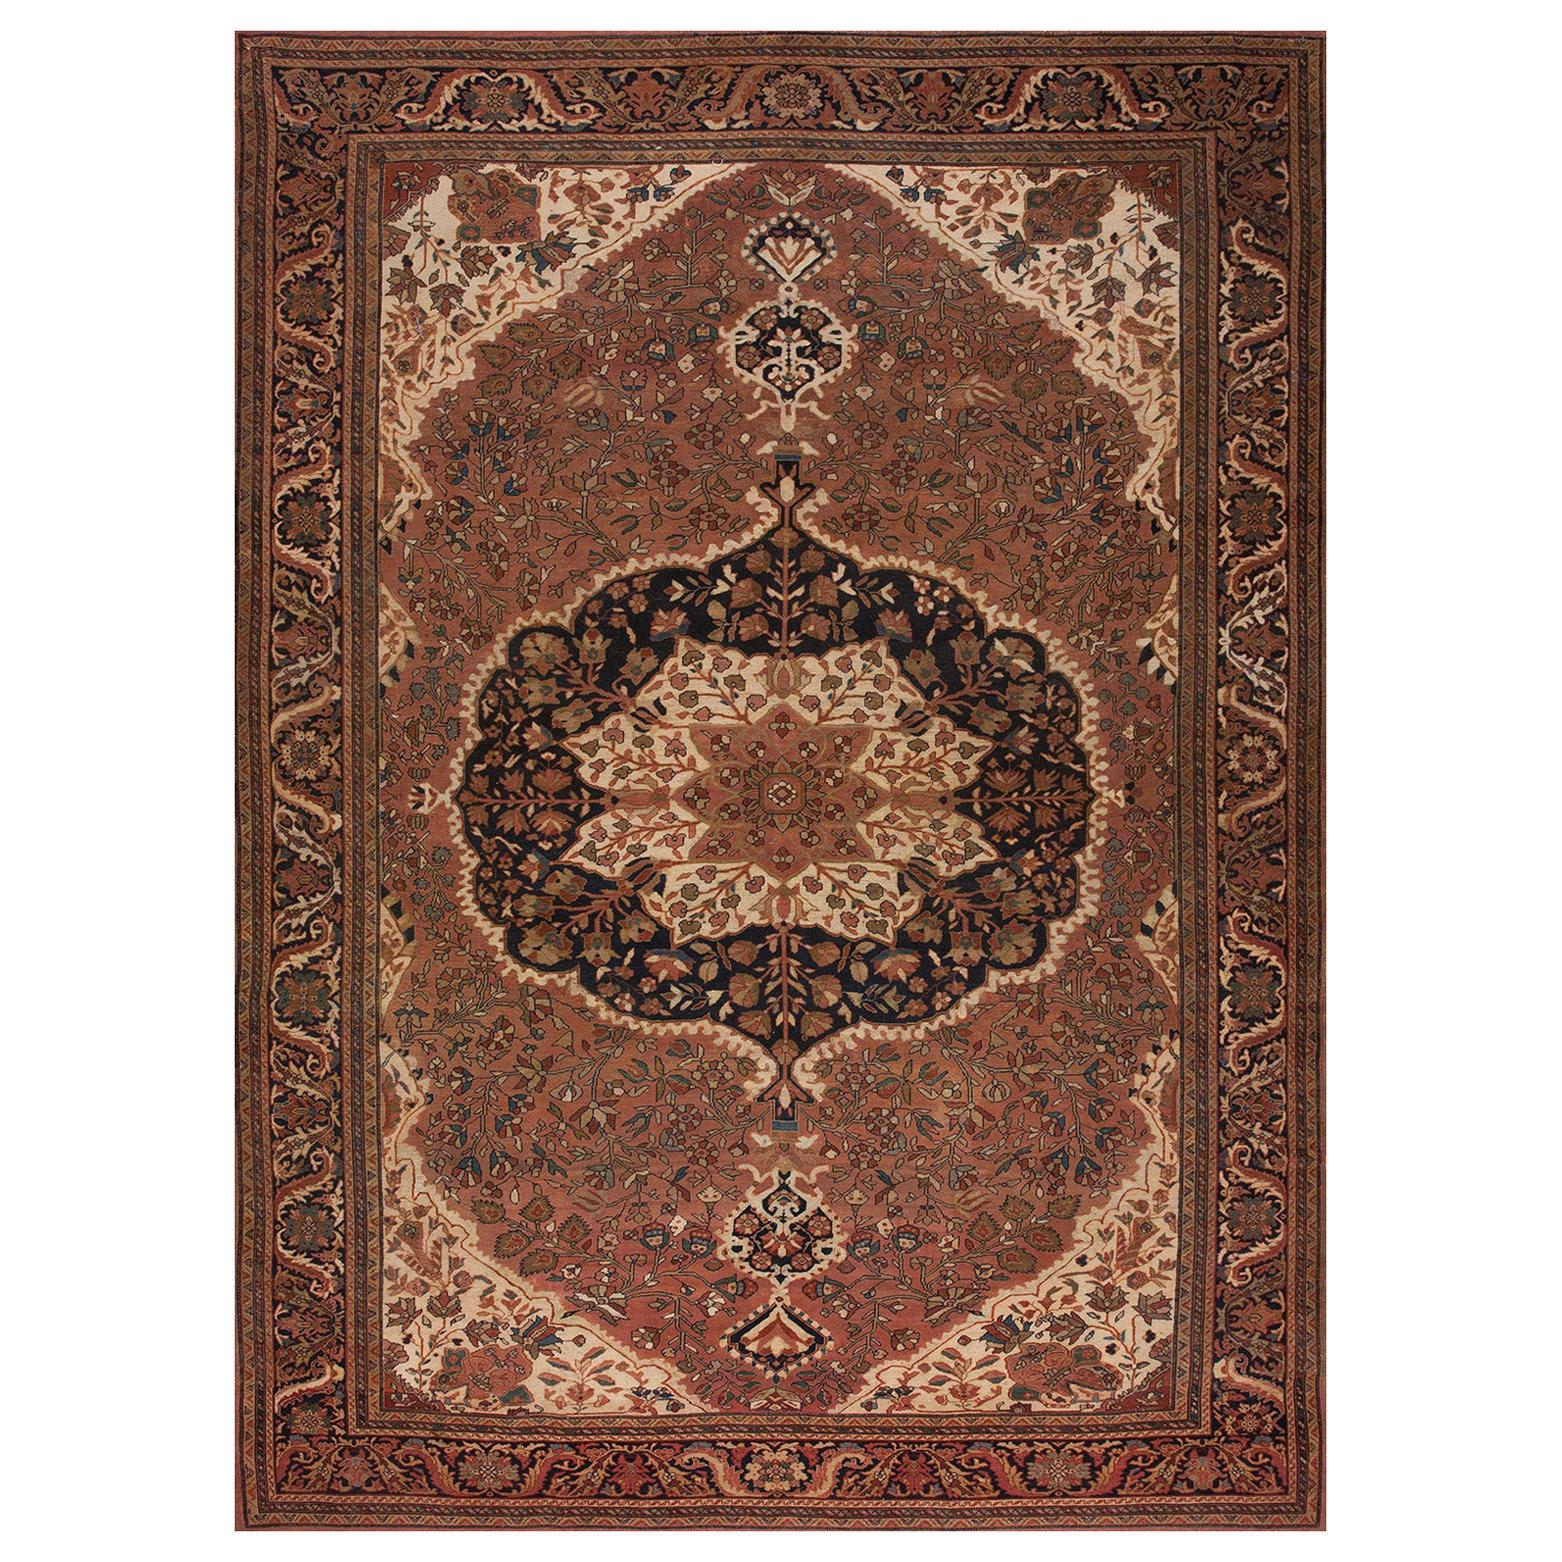 Persischer Sarouk Farahan-Teppich des frühen 20. Jahrhunderts ( 9'3" x 13'2" - 282" x 401")